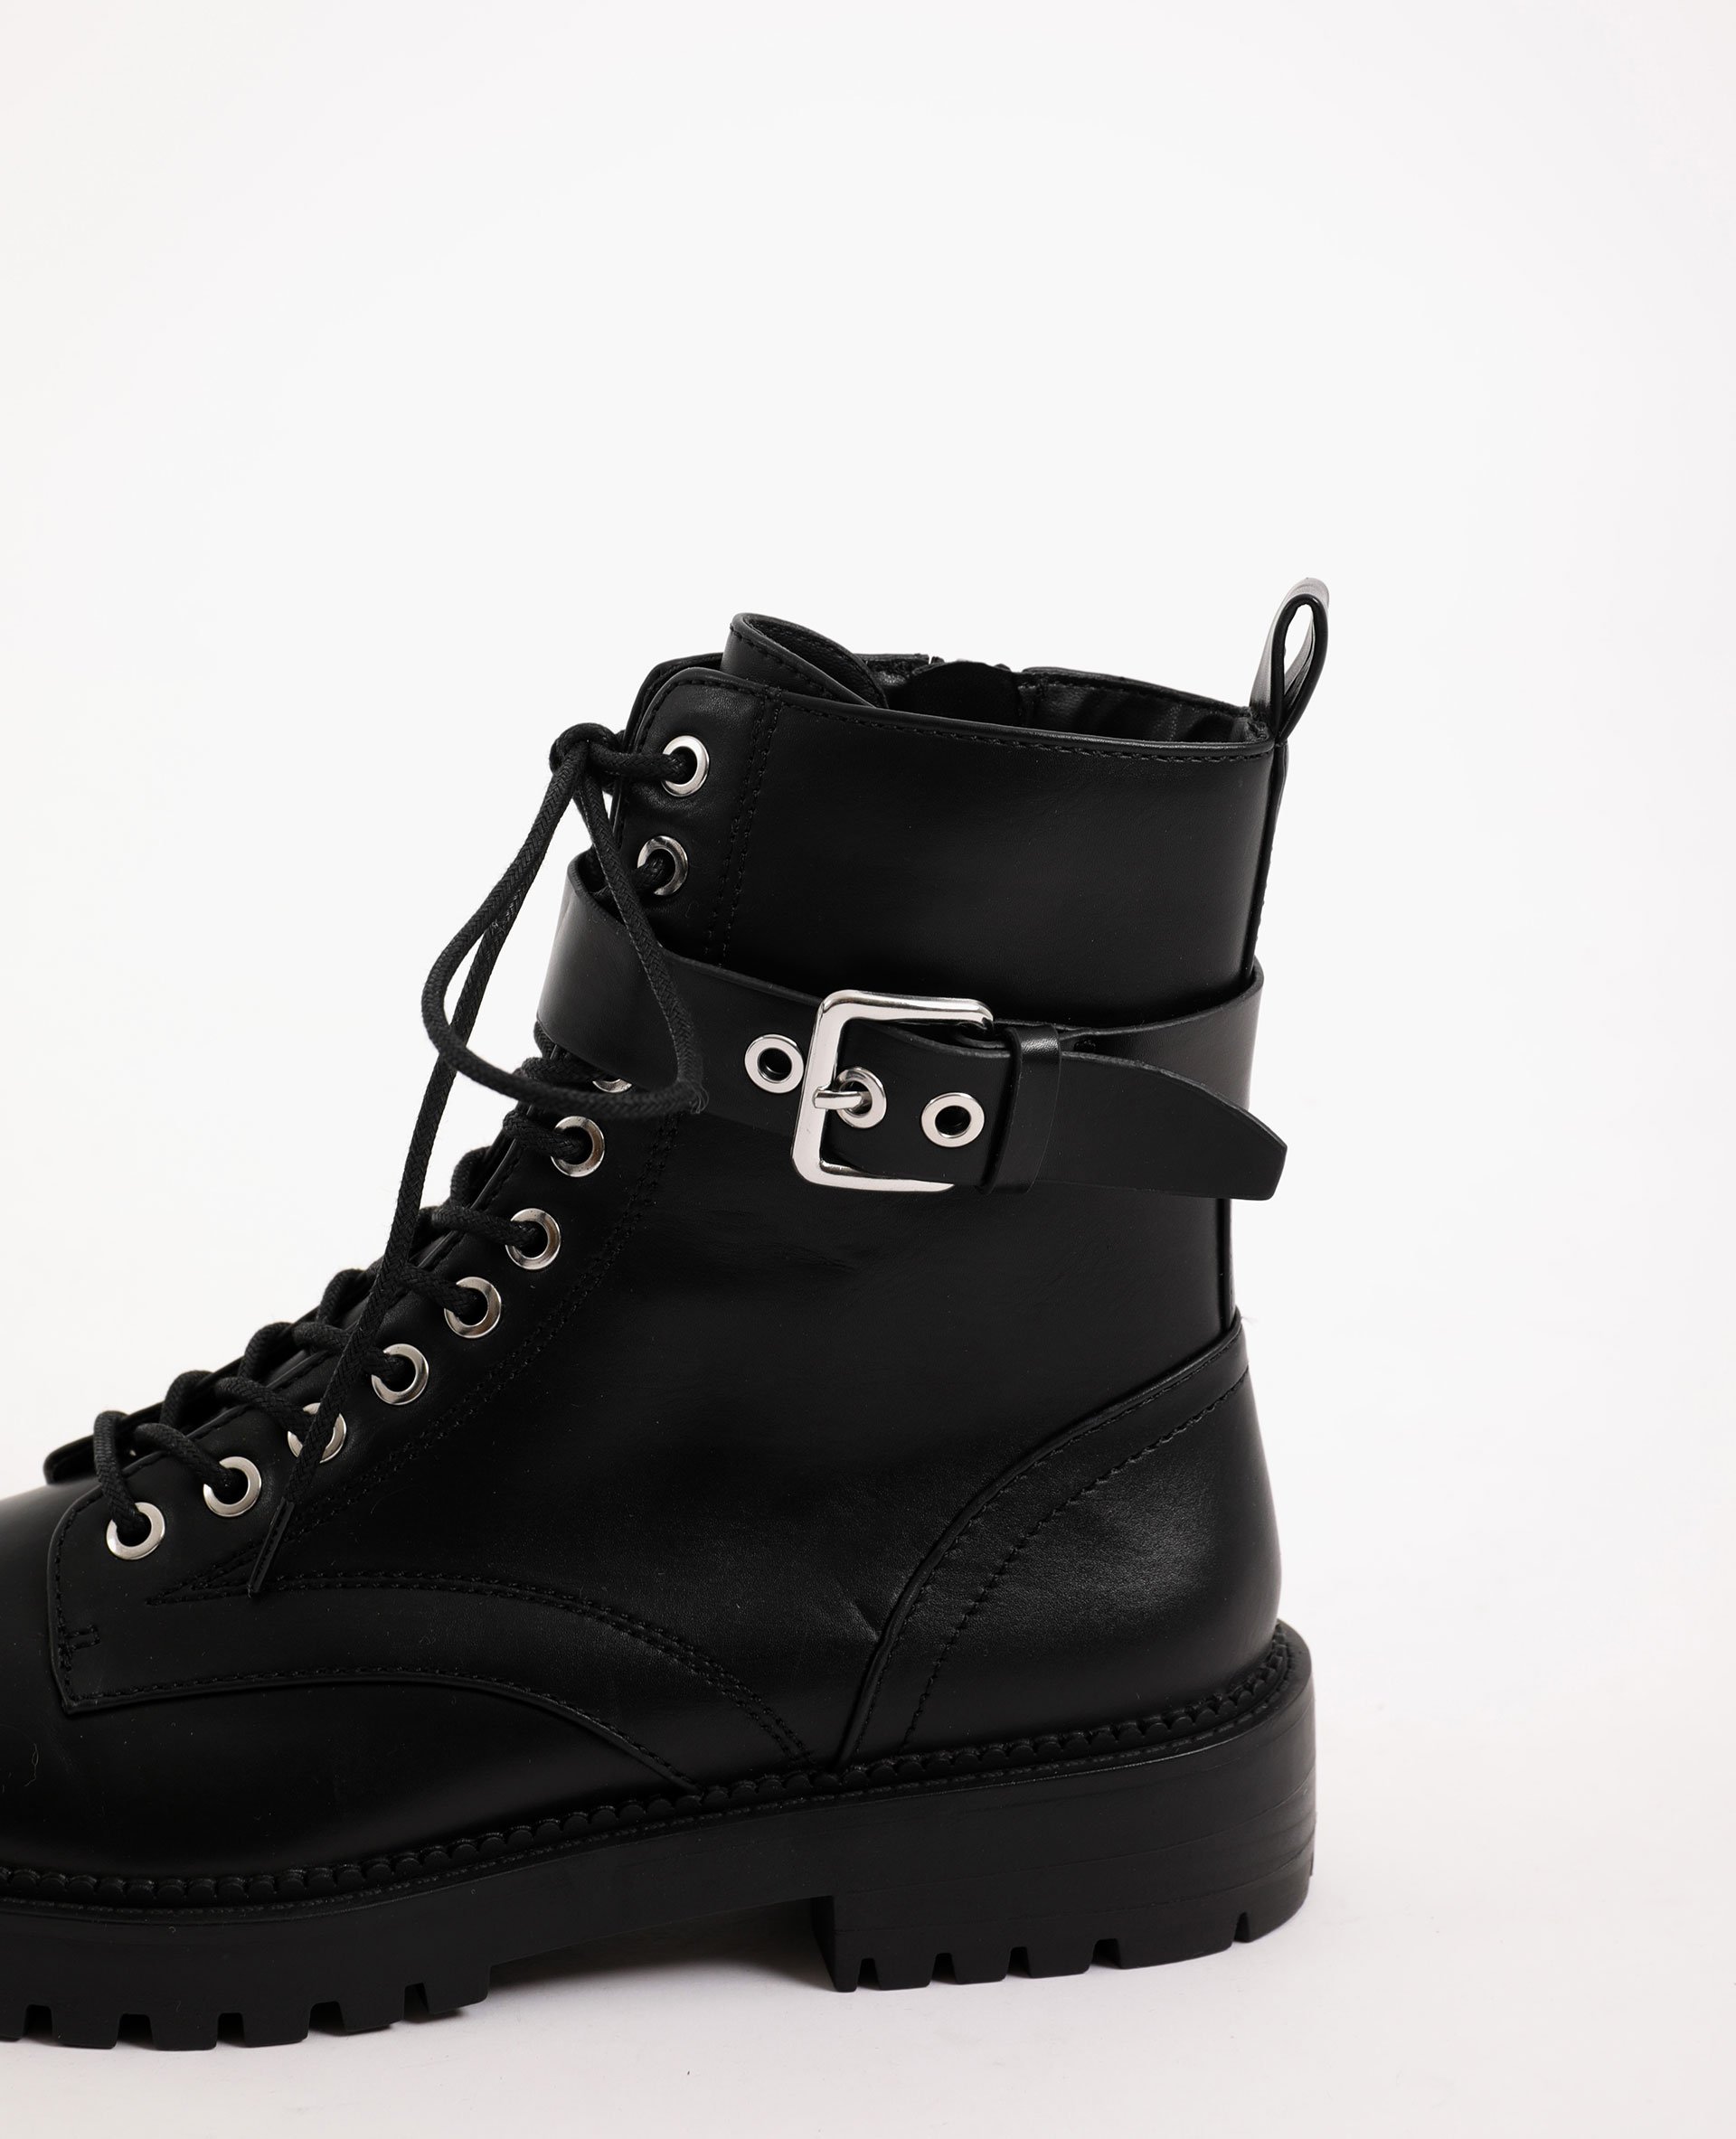 Boots en faux cuir noir - Pimkie